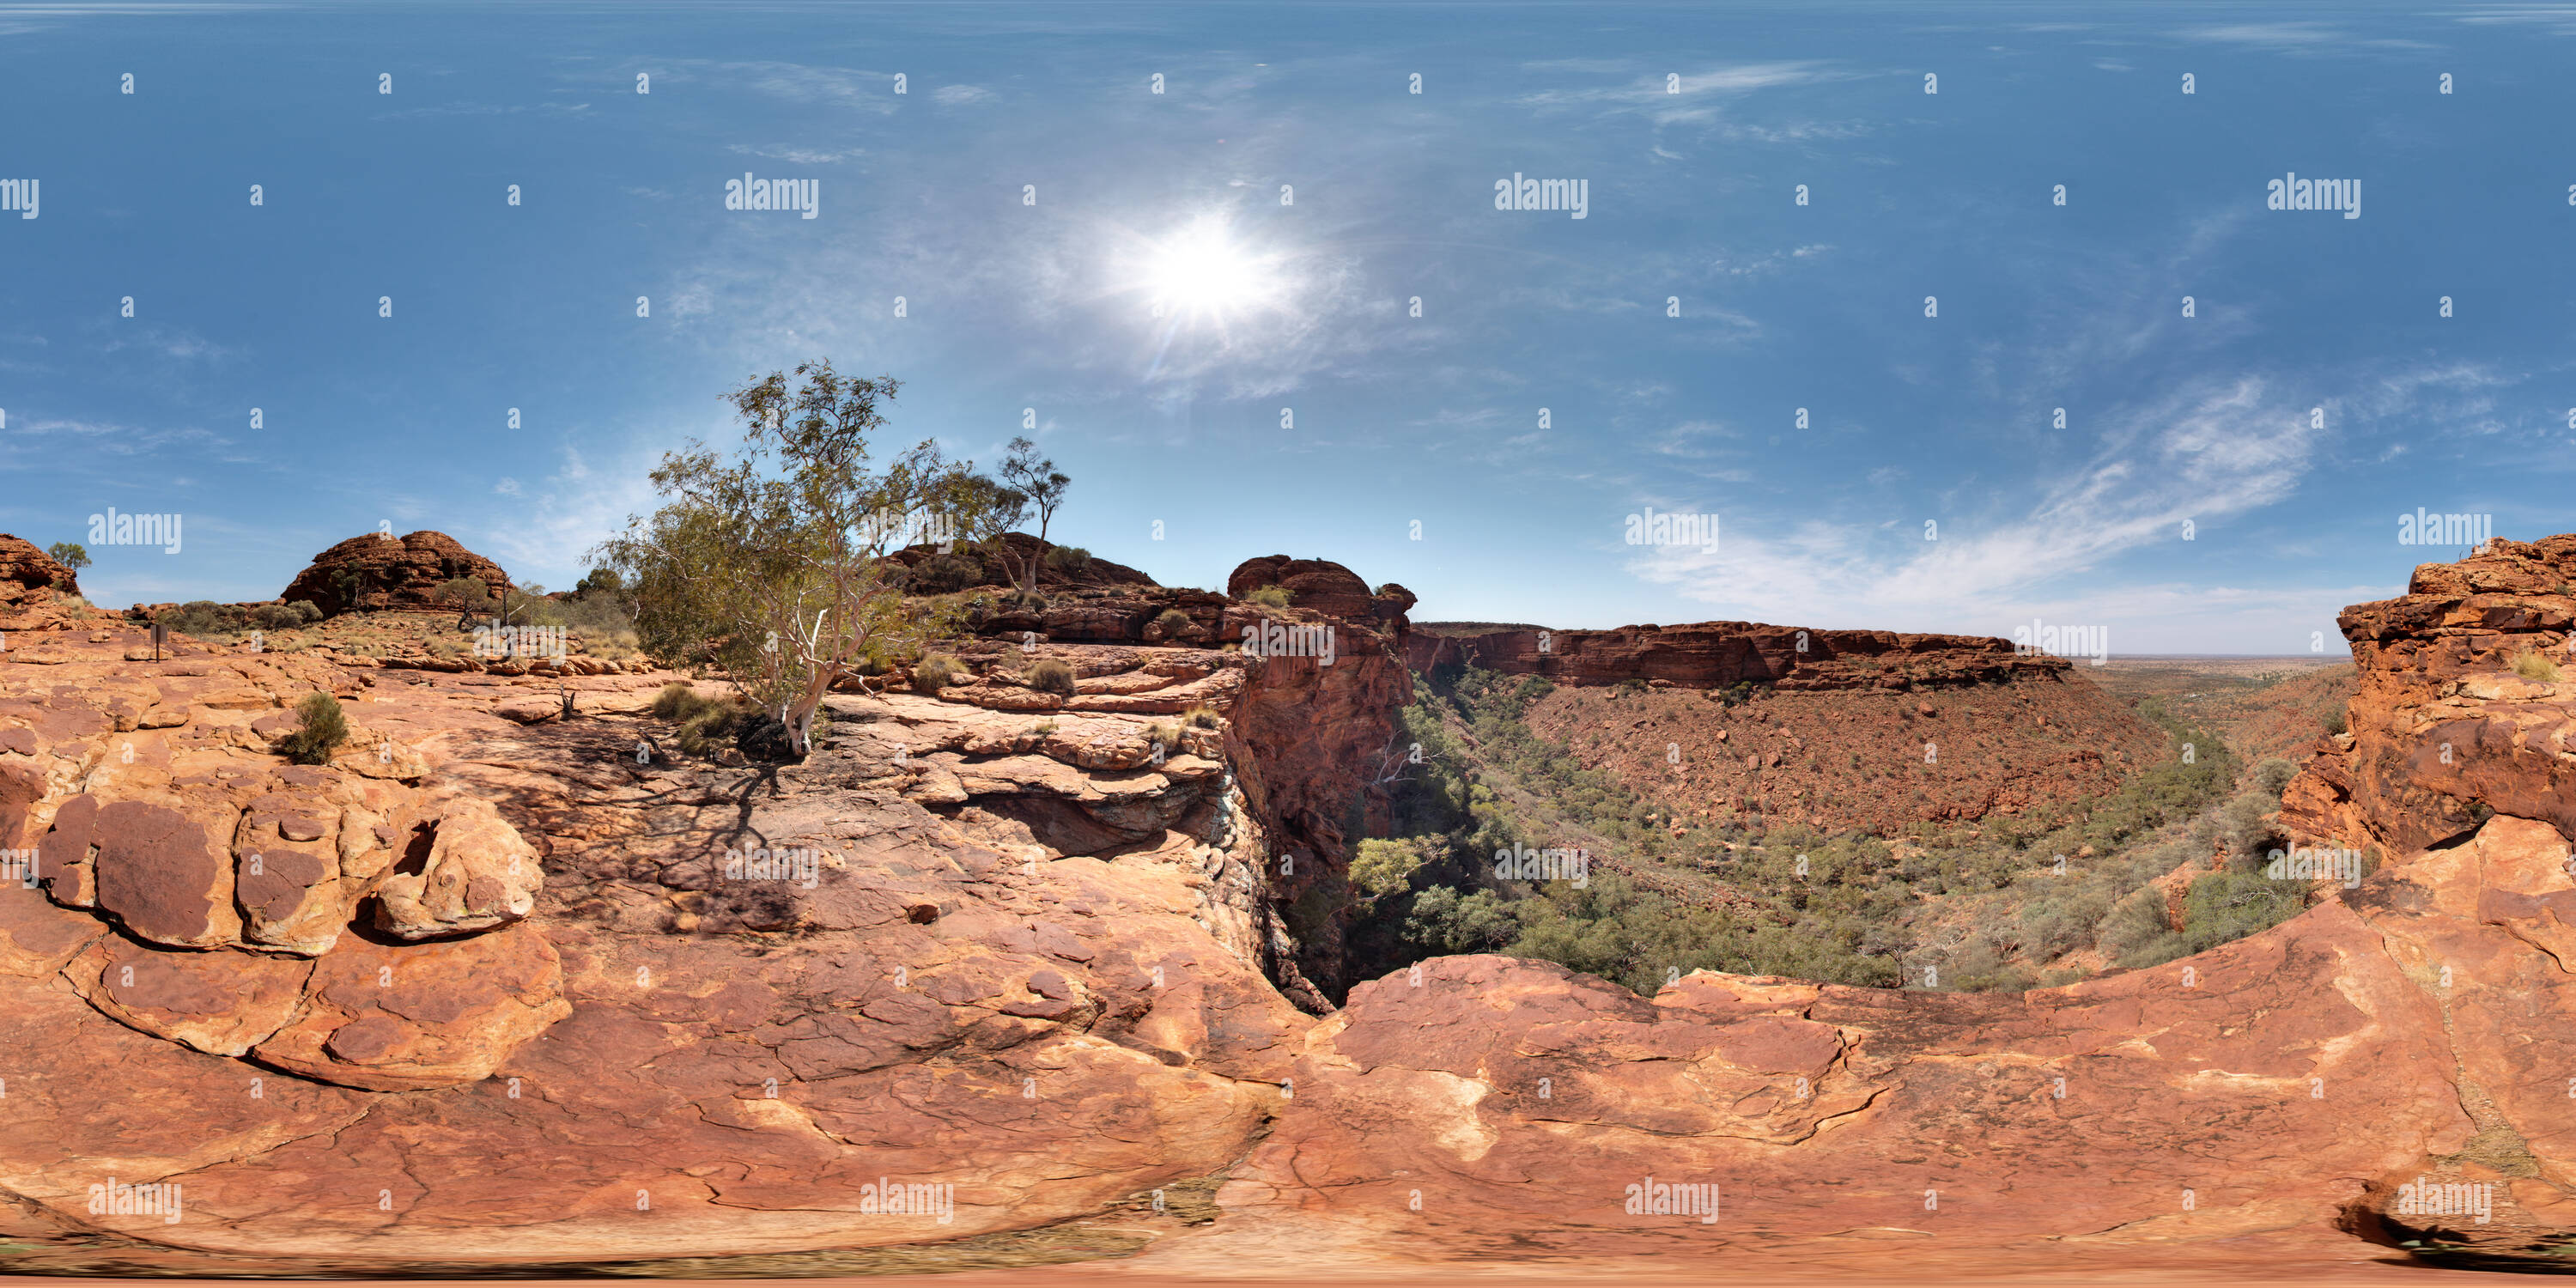 Vue panoramique à 360° de L'Australie, NT, Watarrka National Park, Kings Canyon Rim à pied, bord de la Falaise